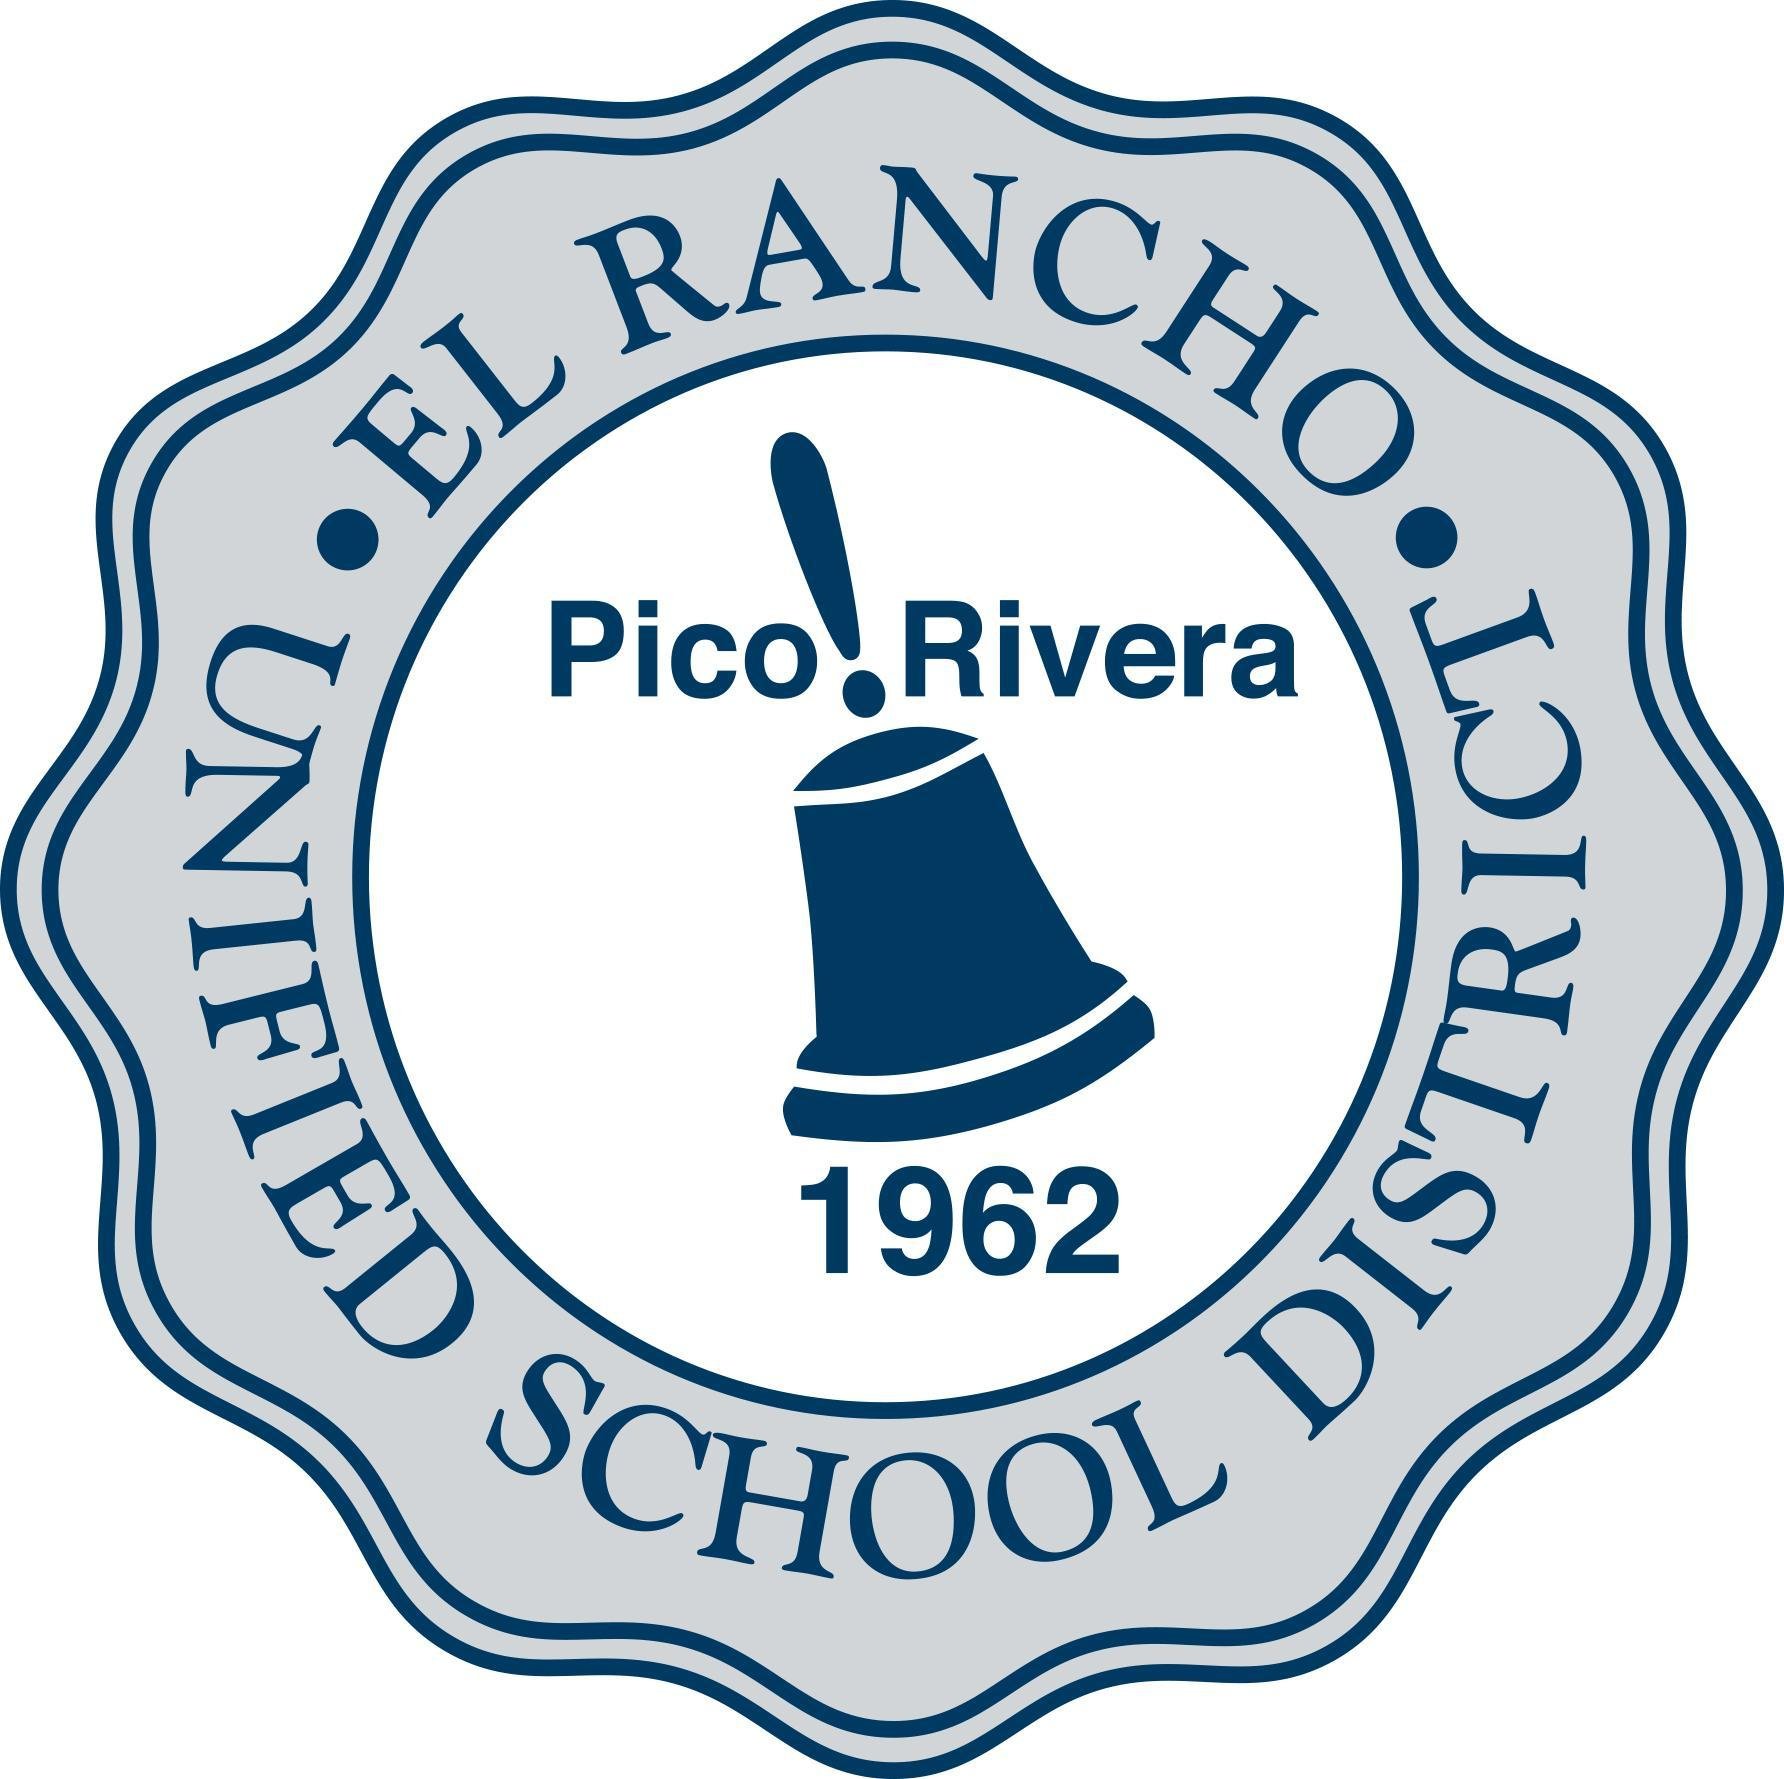 el rancho usd logo sq.jpeg